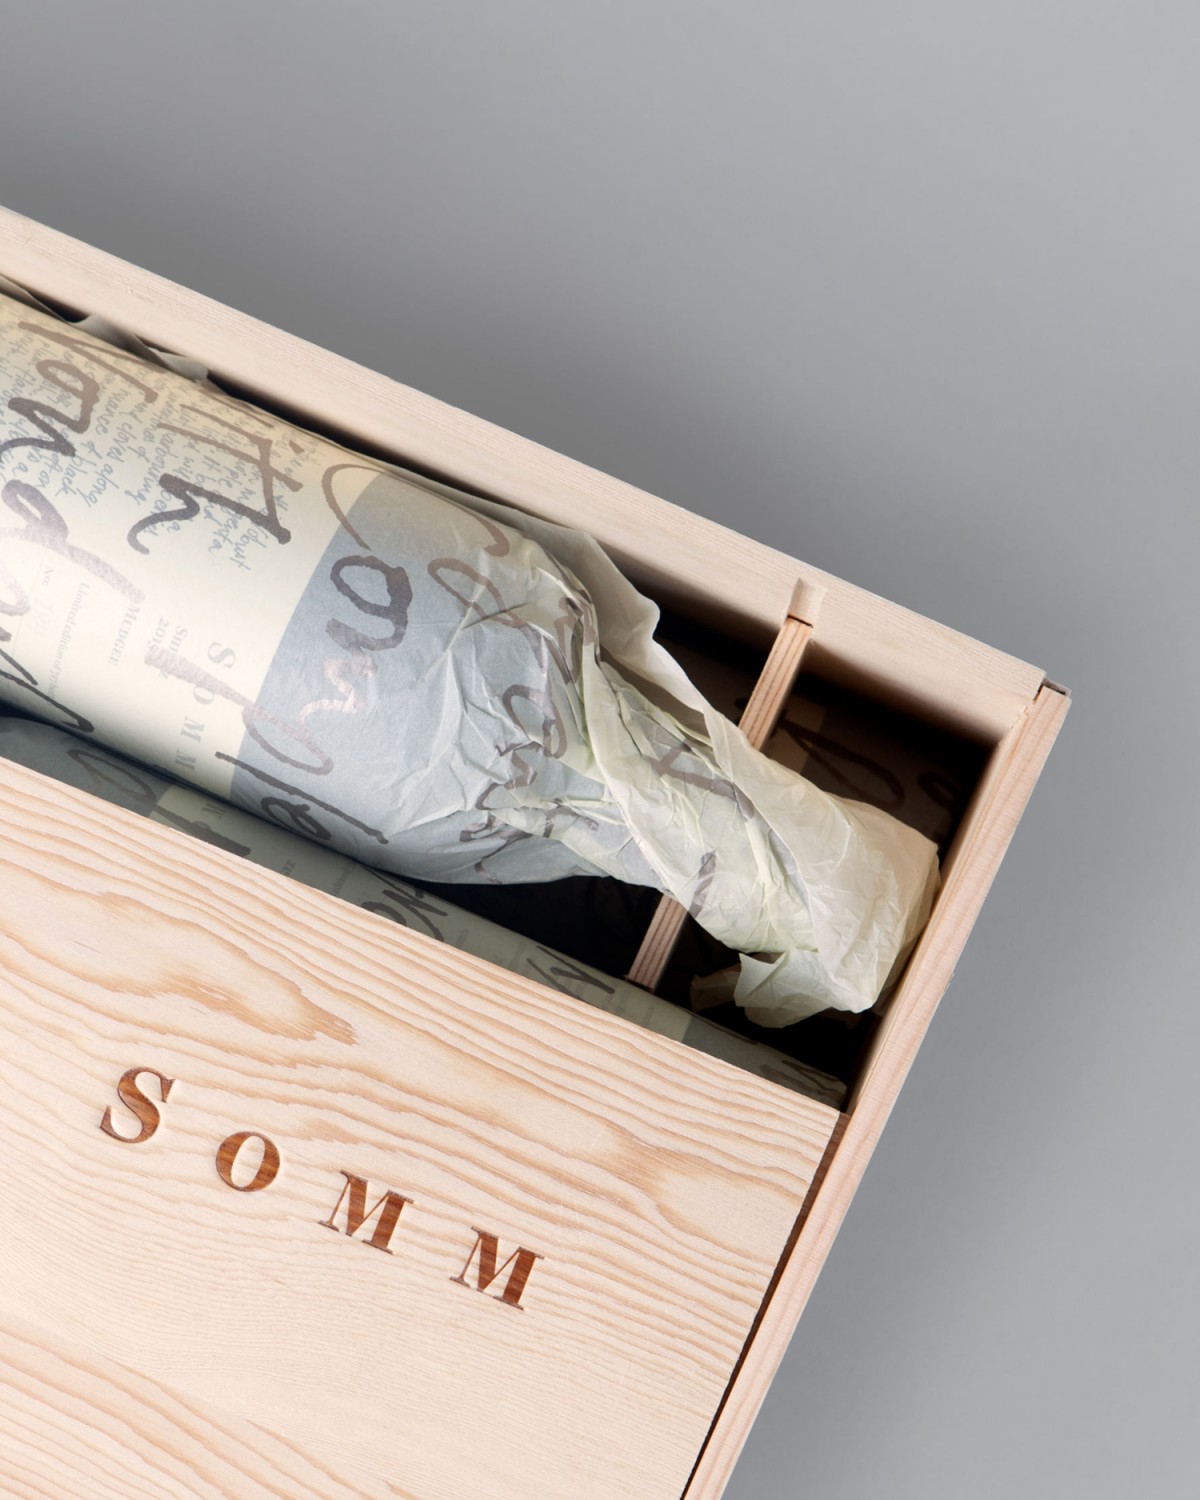 限量版葡萄酒Somm品牌战略定位，产品包装设计